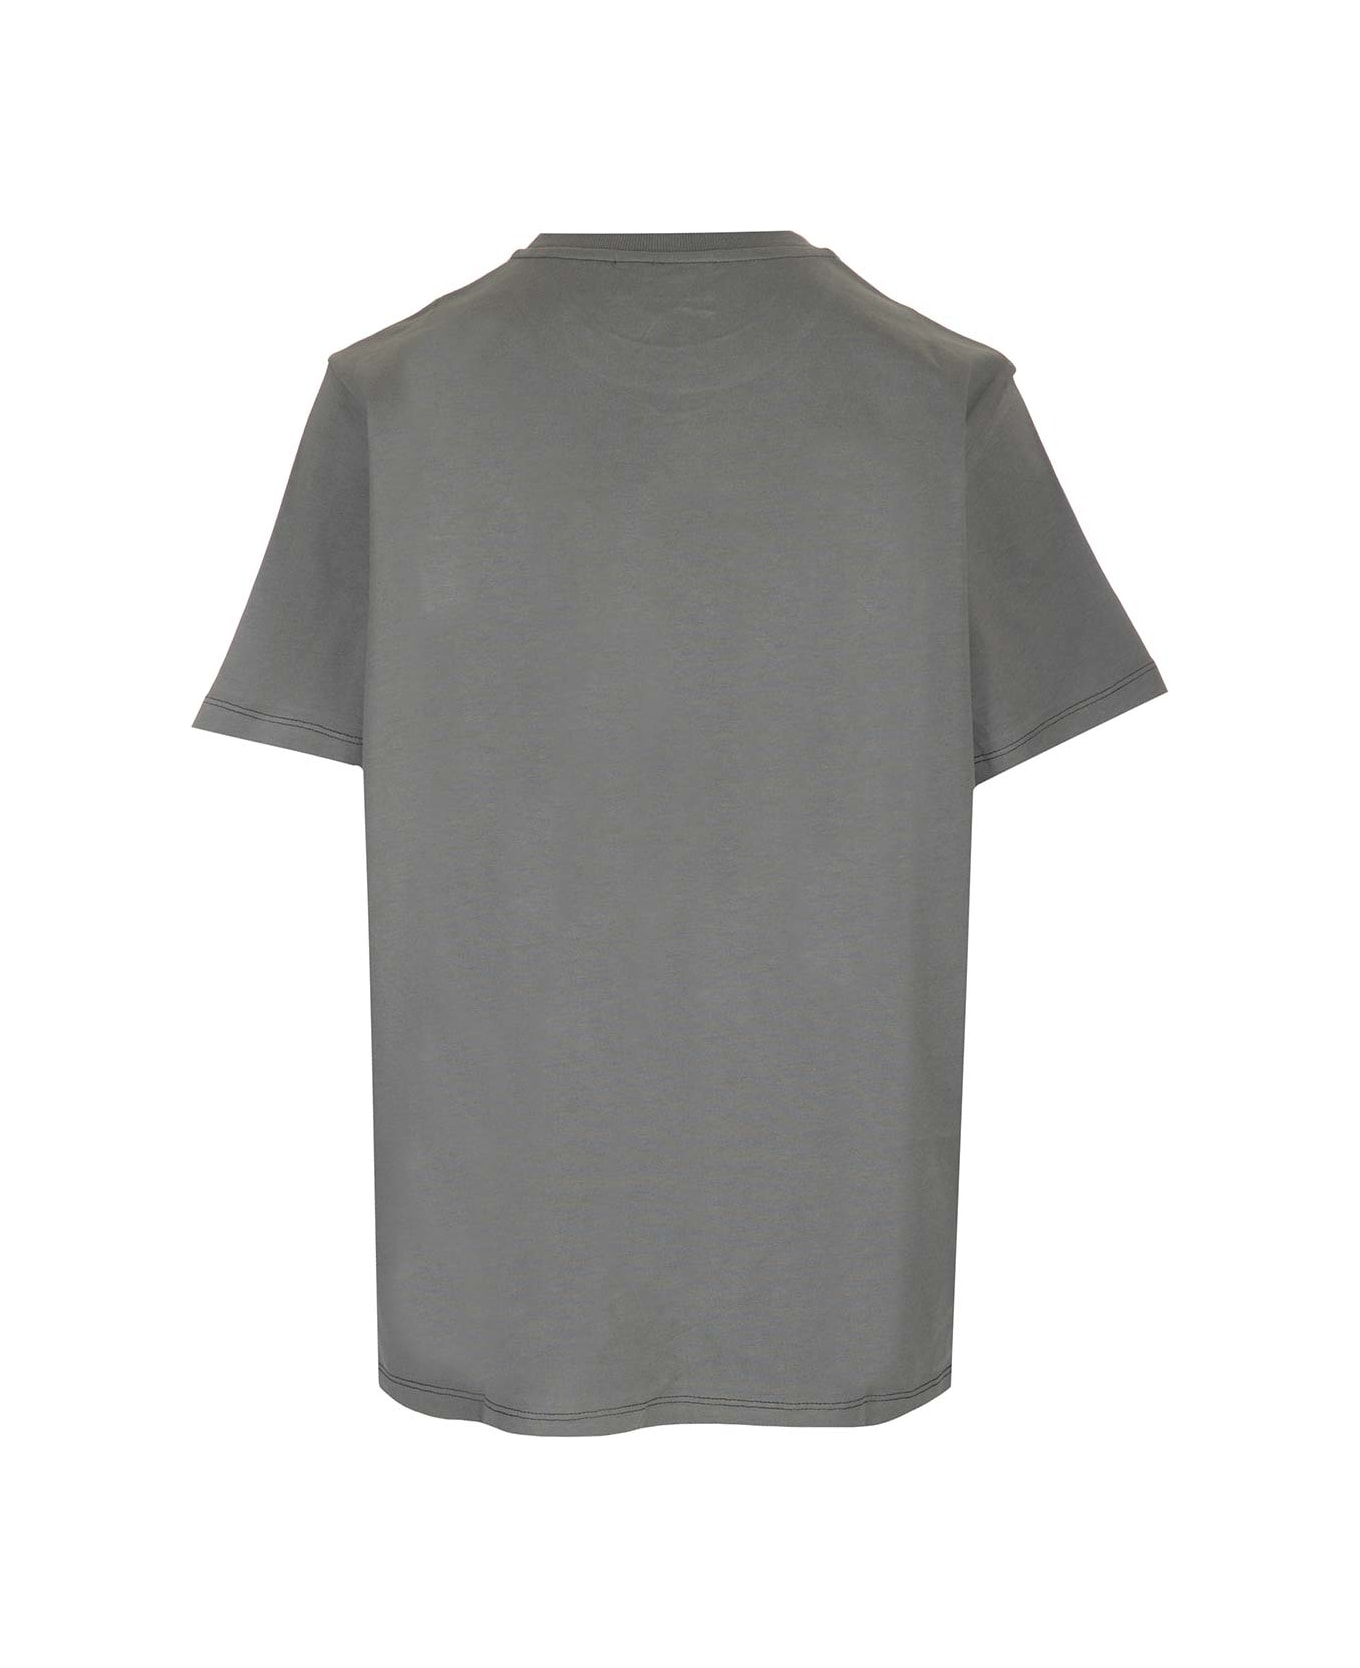 Ganni Heart T-shirt - Grey